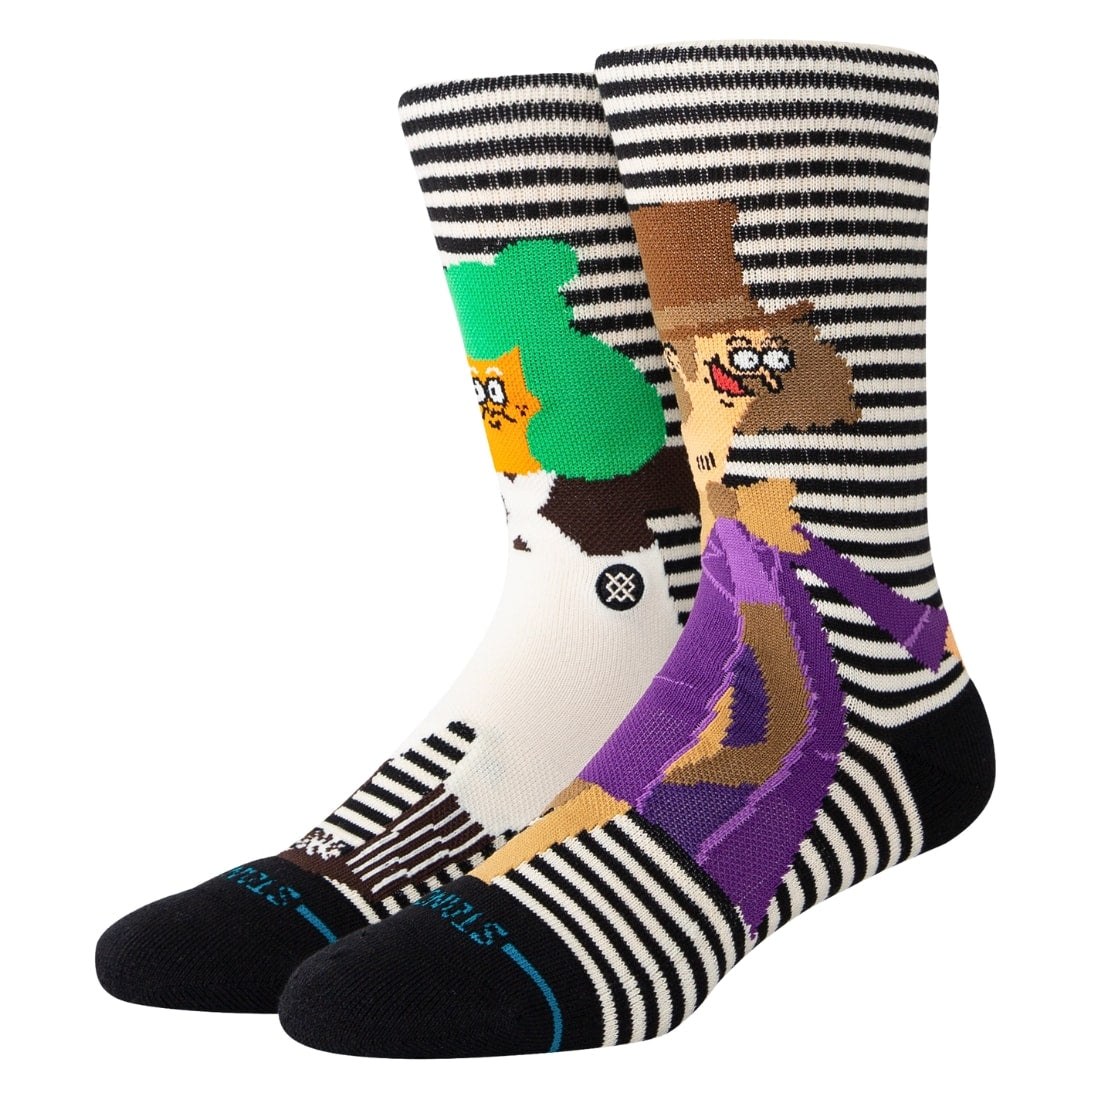 Stance X Willy Wonka Oompa Loompa Socks - Black/White